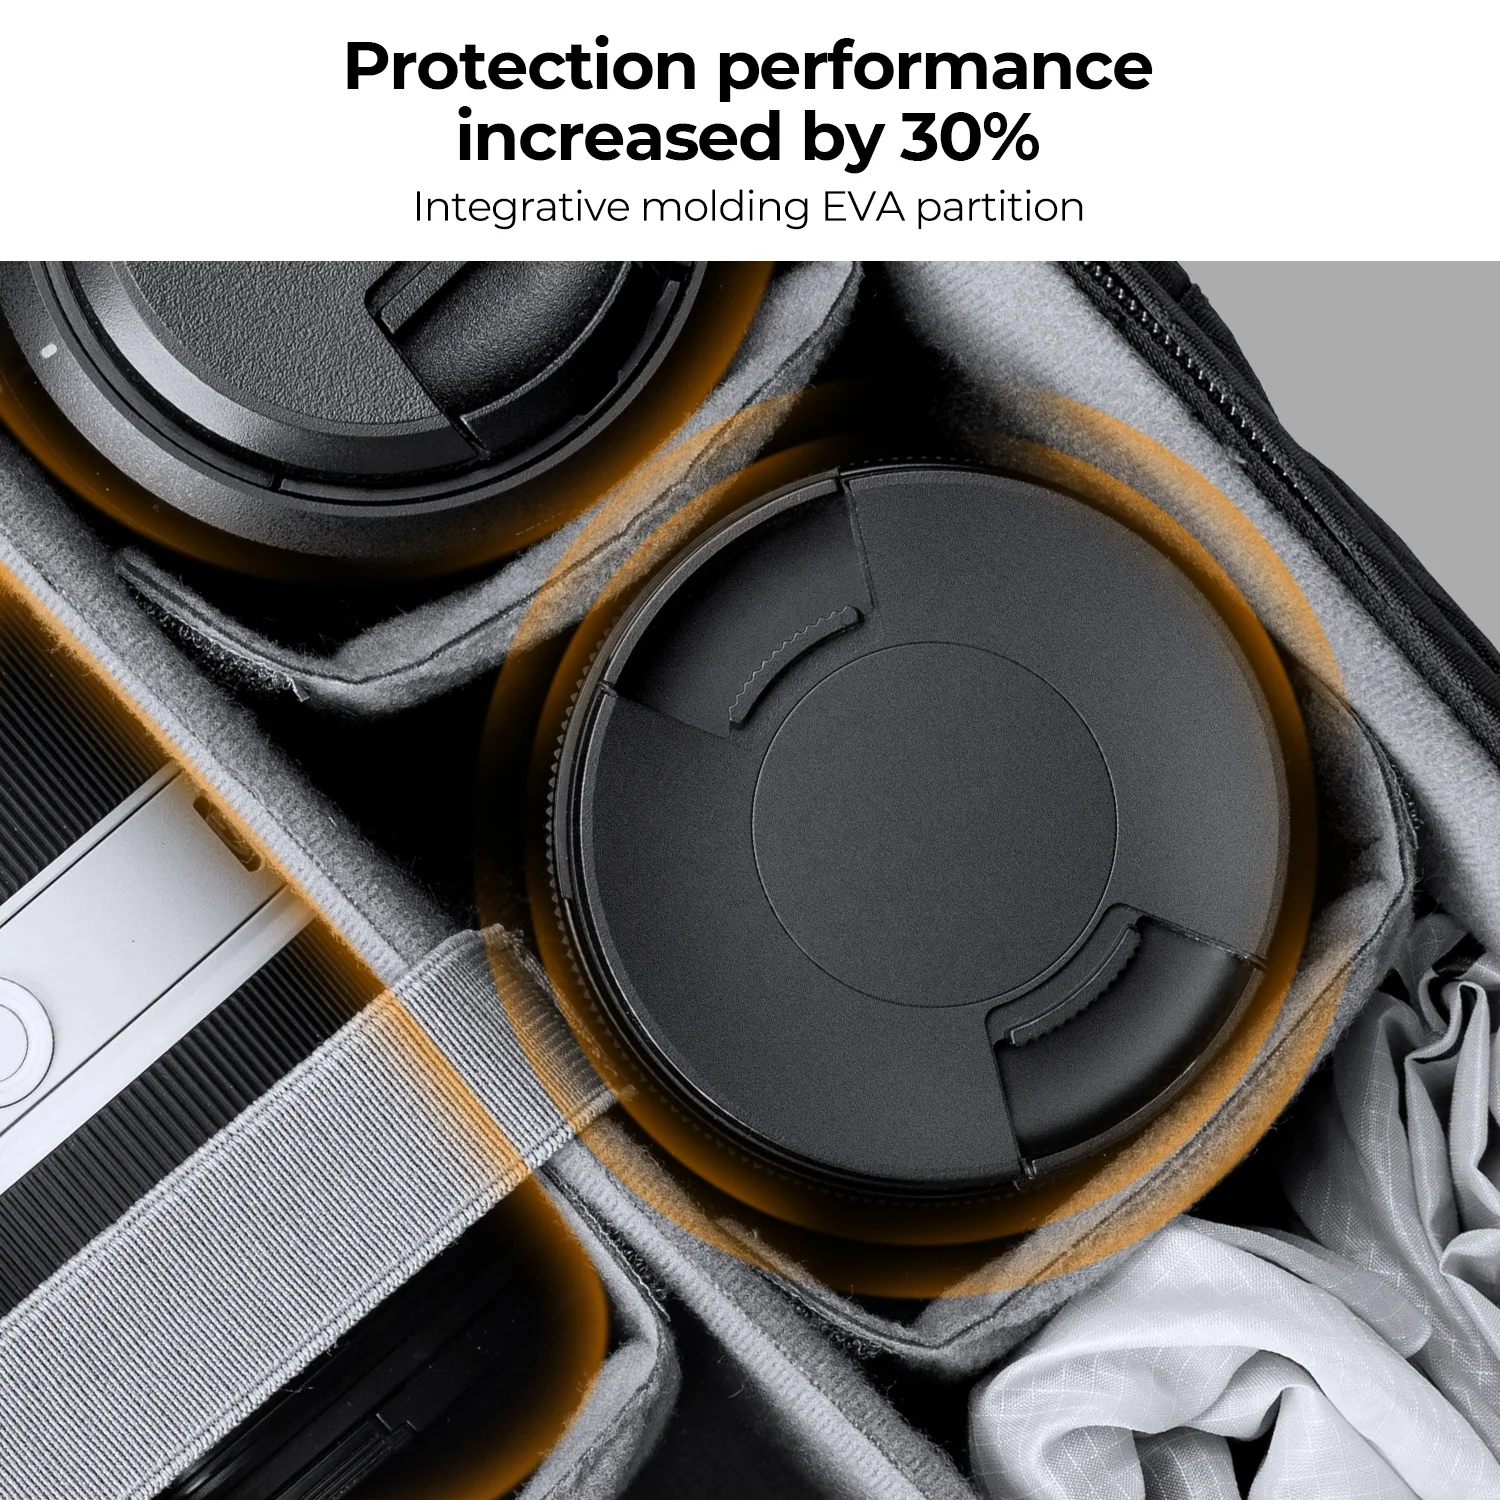 K&F Concept DSLR Camera Backpack Waterproof camera bag for SLR/DSLR cameras lenses and accessories in black